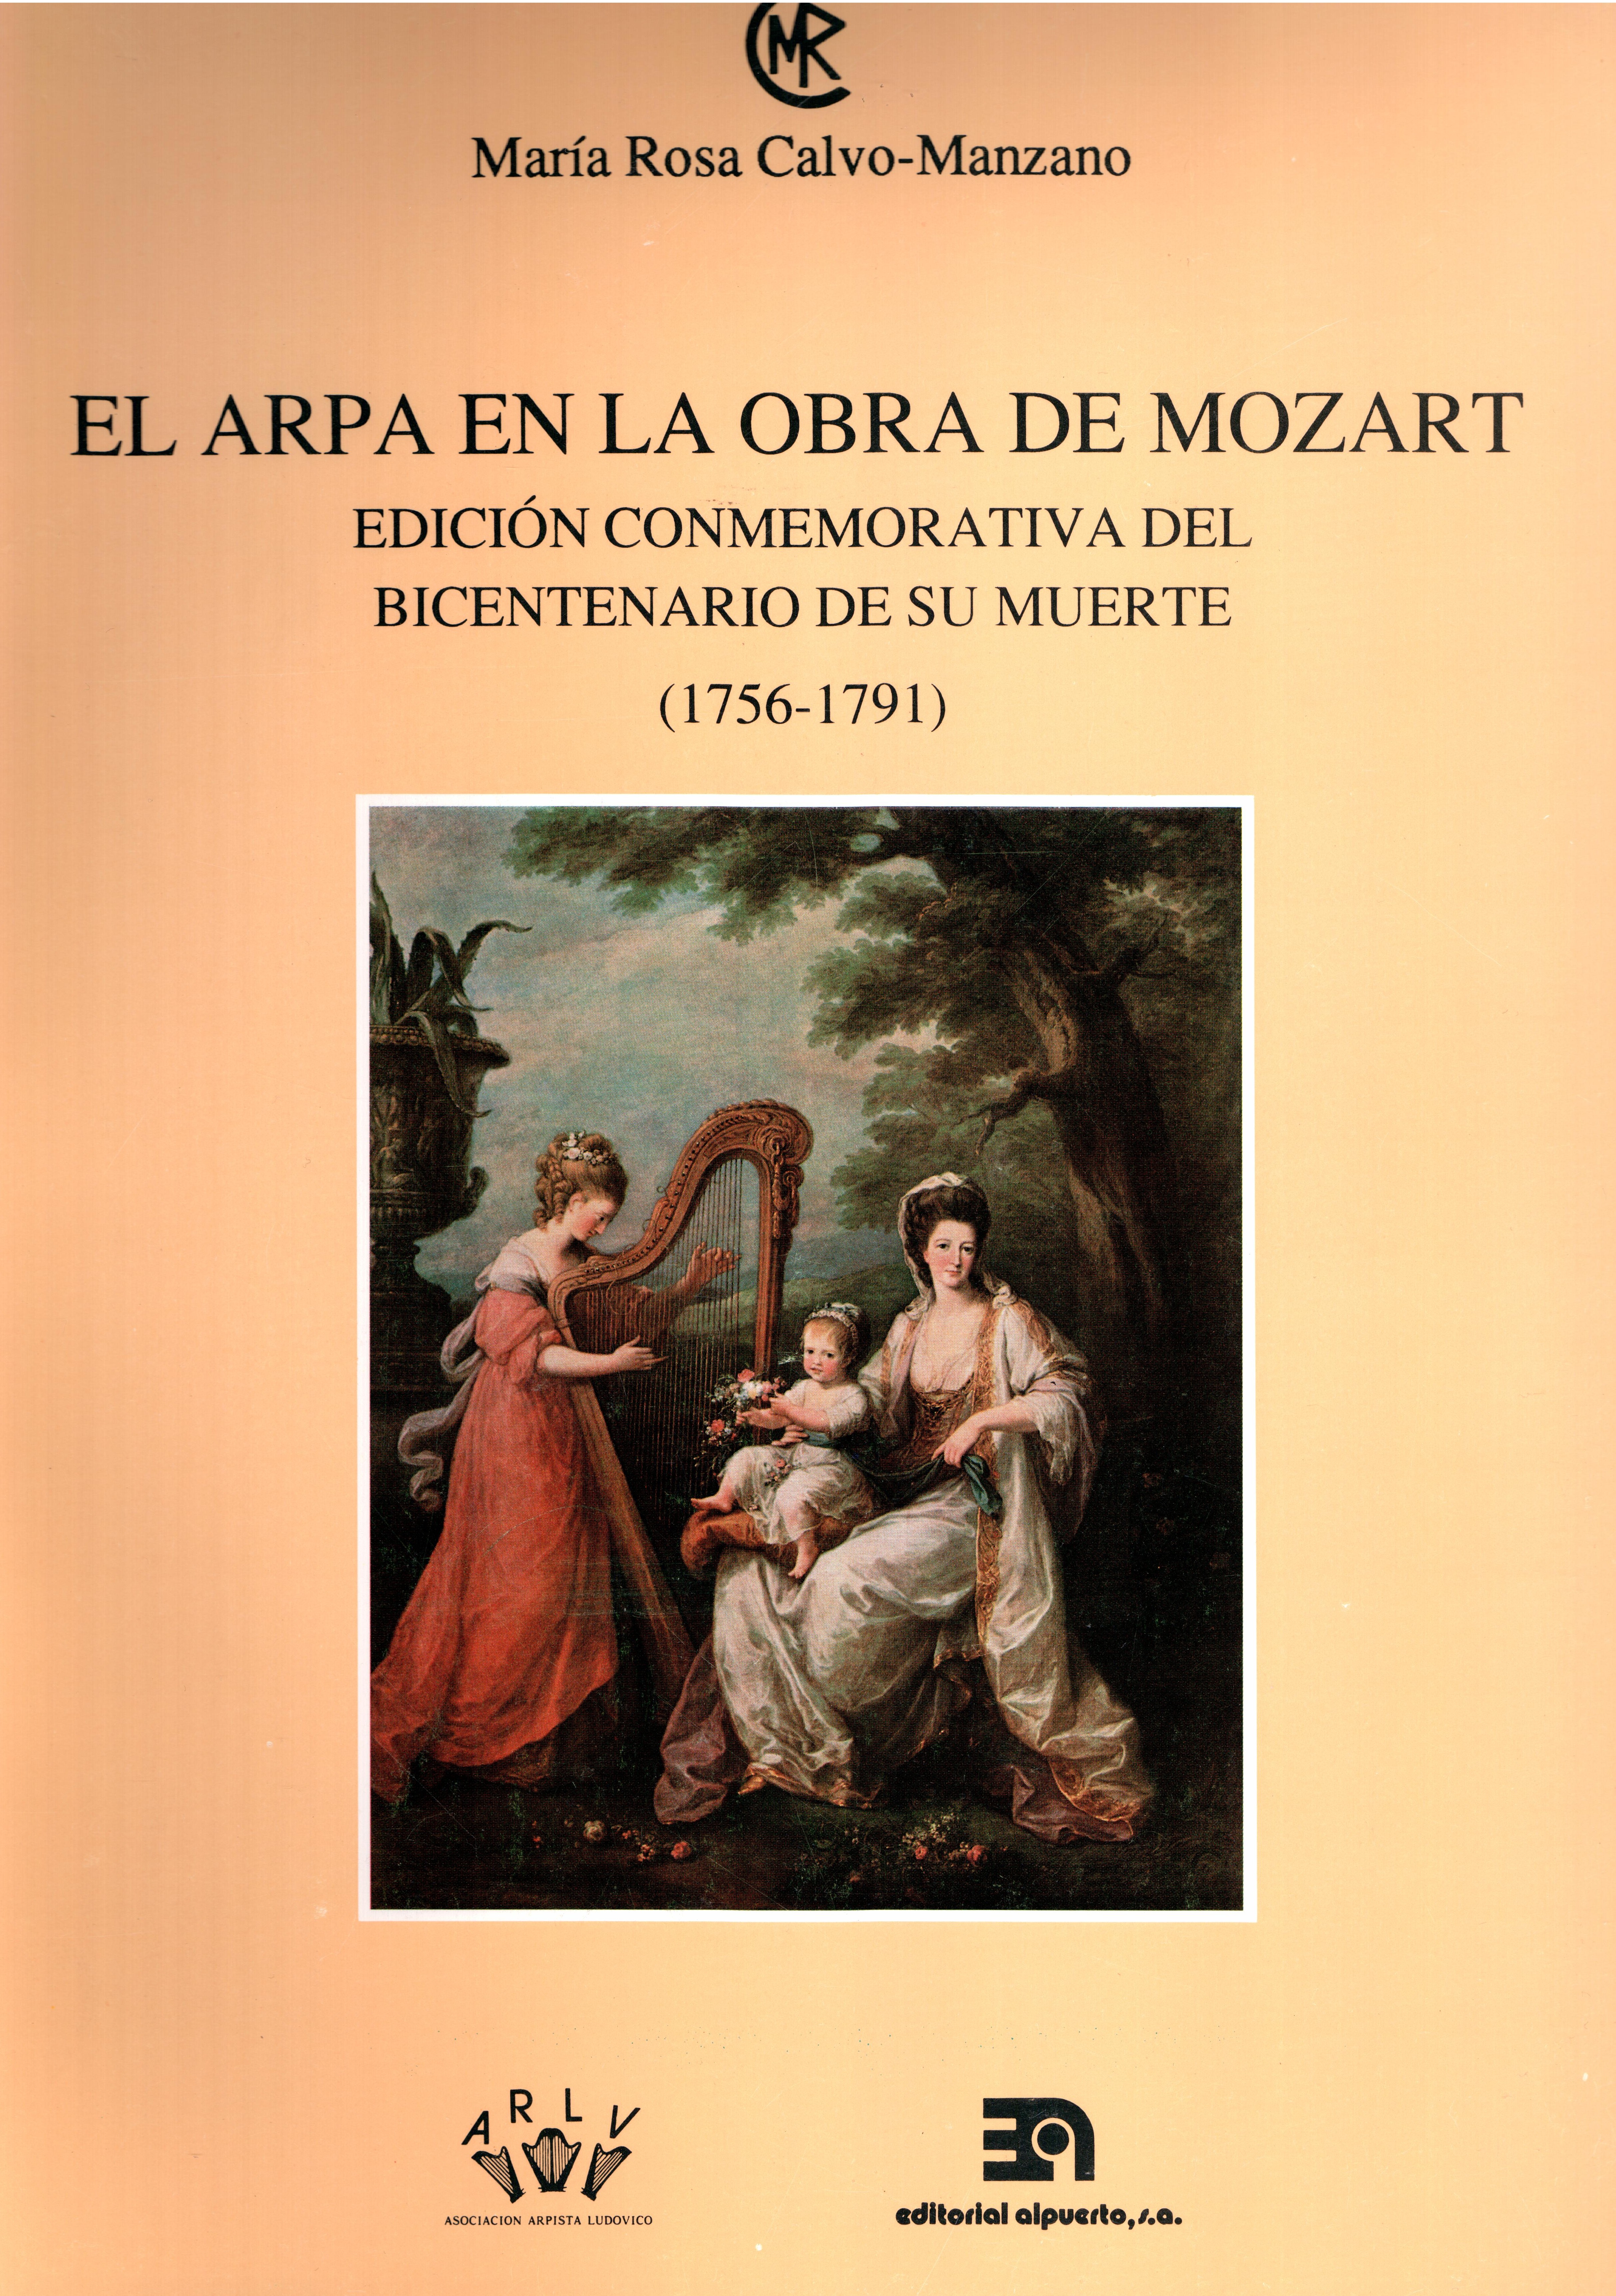 El arpa en la obra de Mozart (1756-1791)